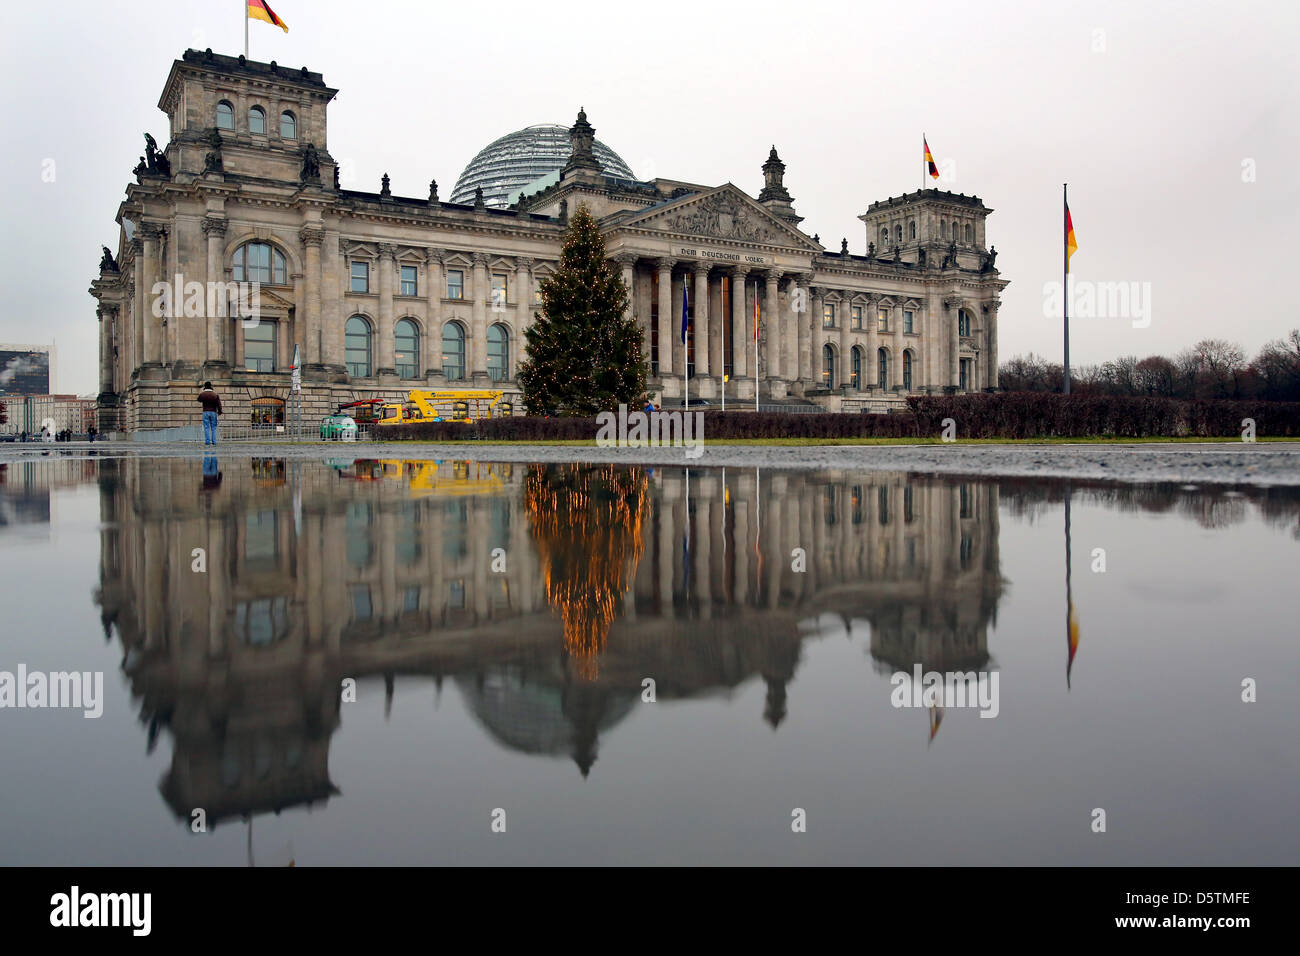 L'arbre de Noël illuminé se reflète dans une flaque d'eau de pluie et des températures au cours de mangeur de 7 degrés centigrades en face du Bundestag à Berlin, Allemagne, 28 novembre 2012. Photo : WOLFGANG KUMM Banque D'Images